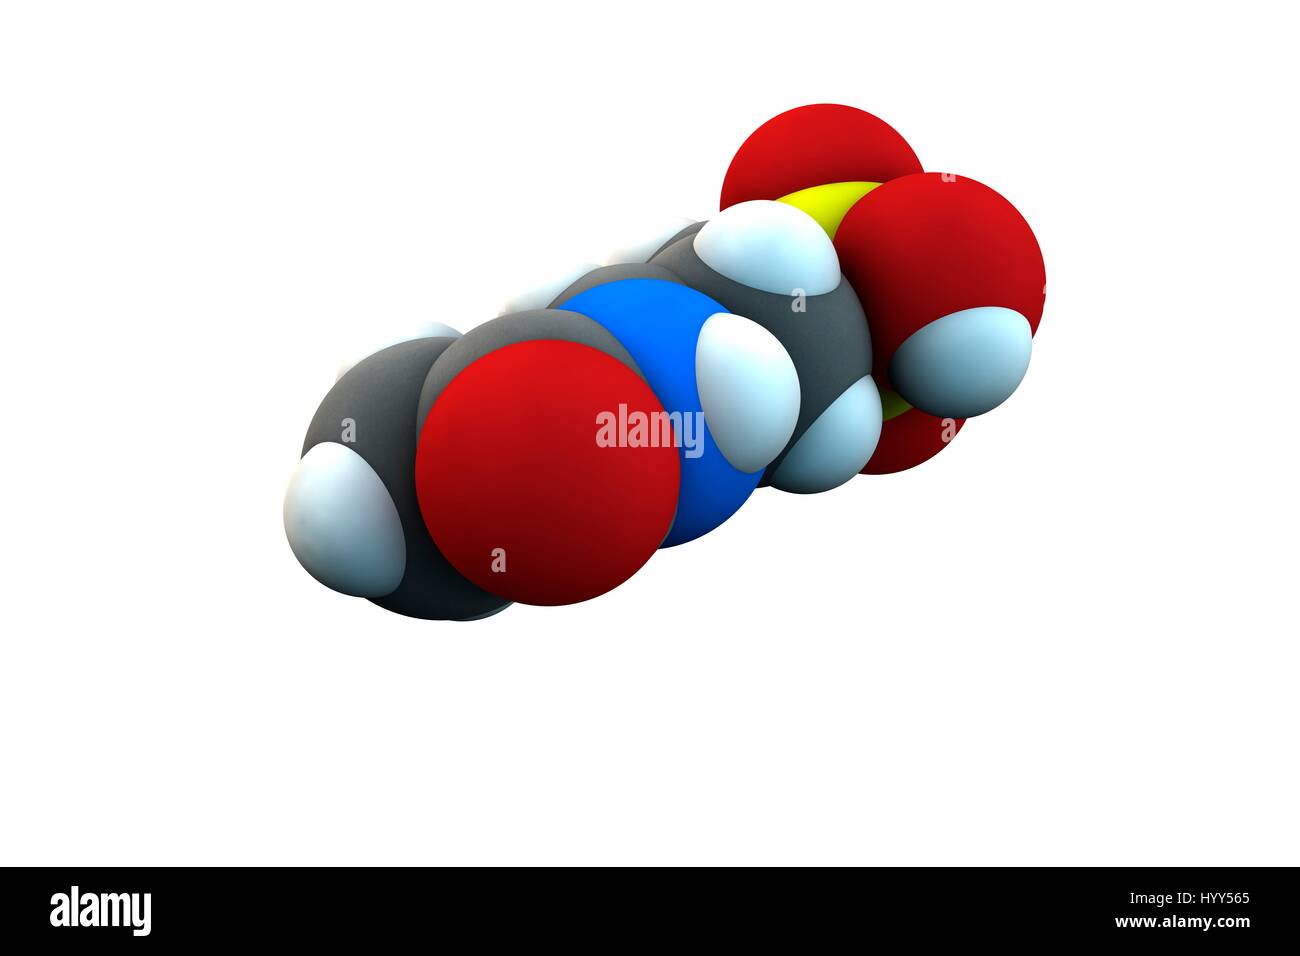 Le traitement de l'alcoolisme de l'acamprosate molécule pharmaceutique. La formule chimique est C5H11NO4S. Les atomes sont représentés comme des sphères : le carbone (gris), l'hydrogène (blanc), l'azote (bleu), l'oxygène (rouge), le soufre (jaune). L'illustration. Banque D'Images